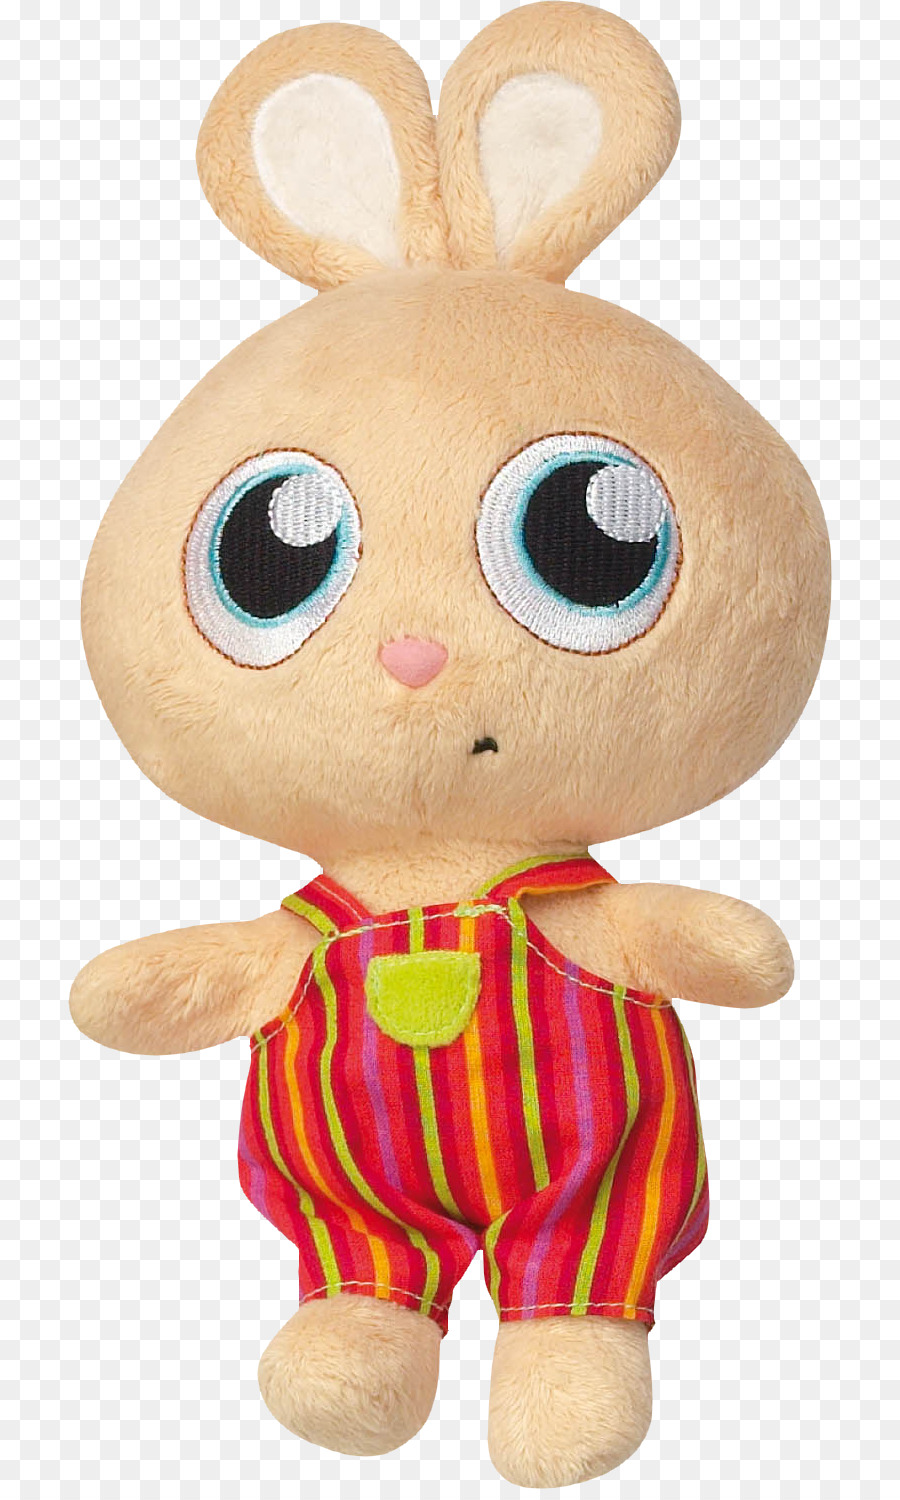 ตุ๊กตาสัตว์ Cuddly ของเล่น，กระต่ายวันอีสเตอร์ PNG